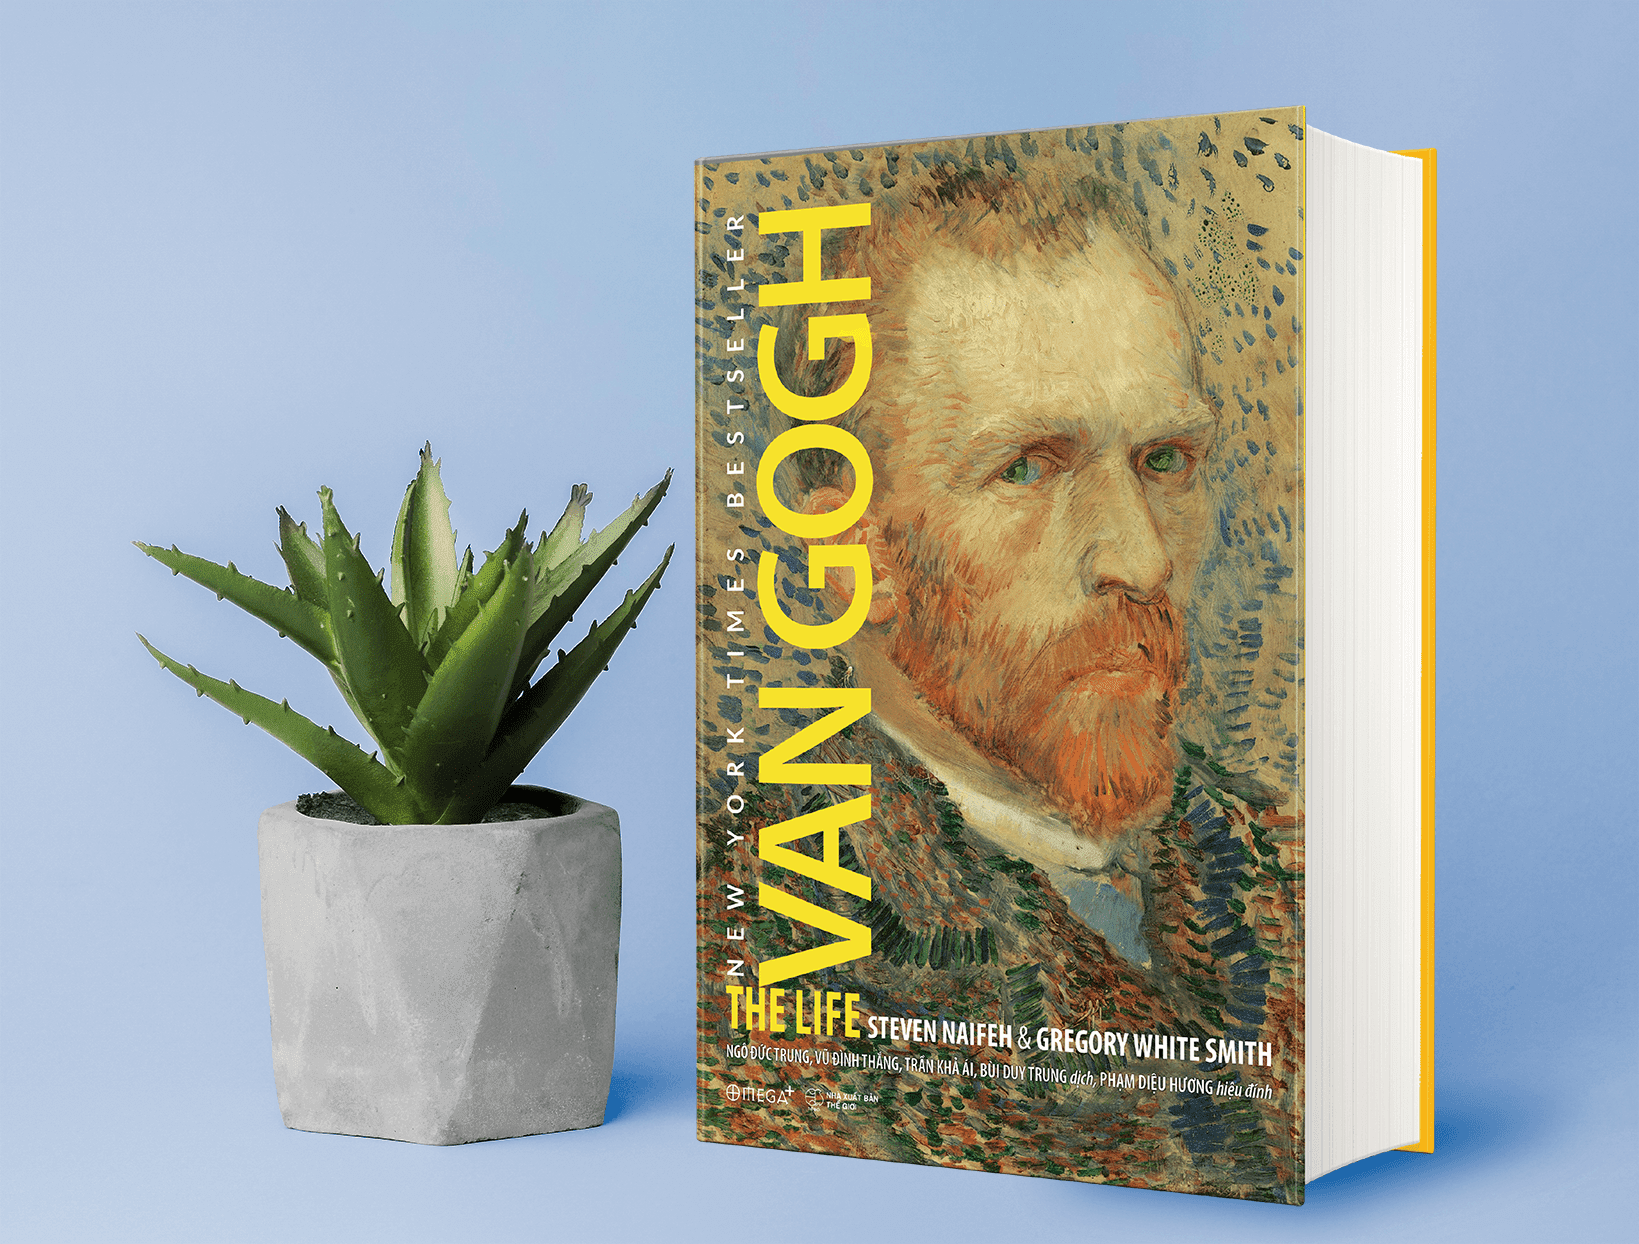 Van Gogh: The Life - Một biên niên sử về số phận và nỗi đau - Ảnh 1.